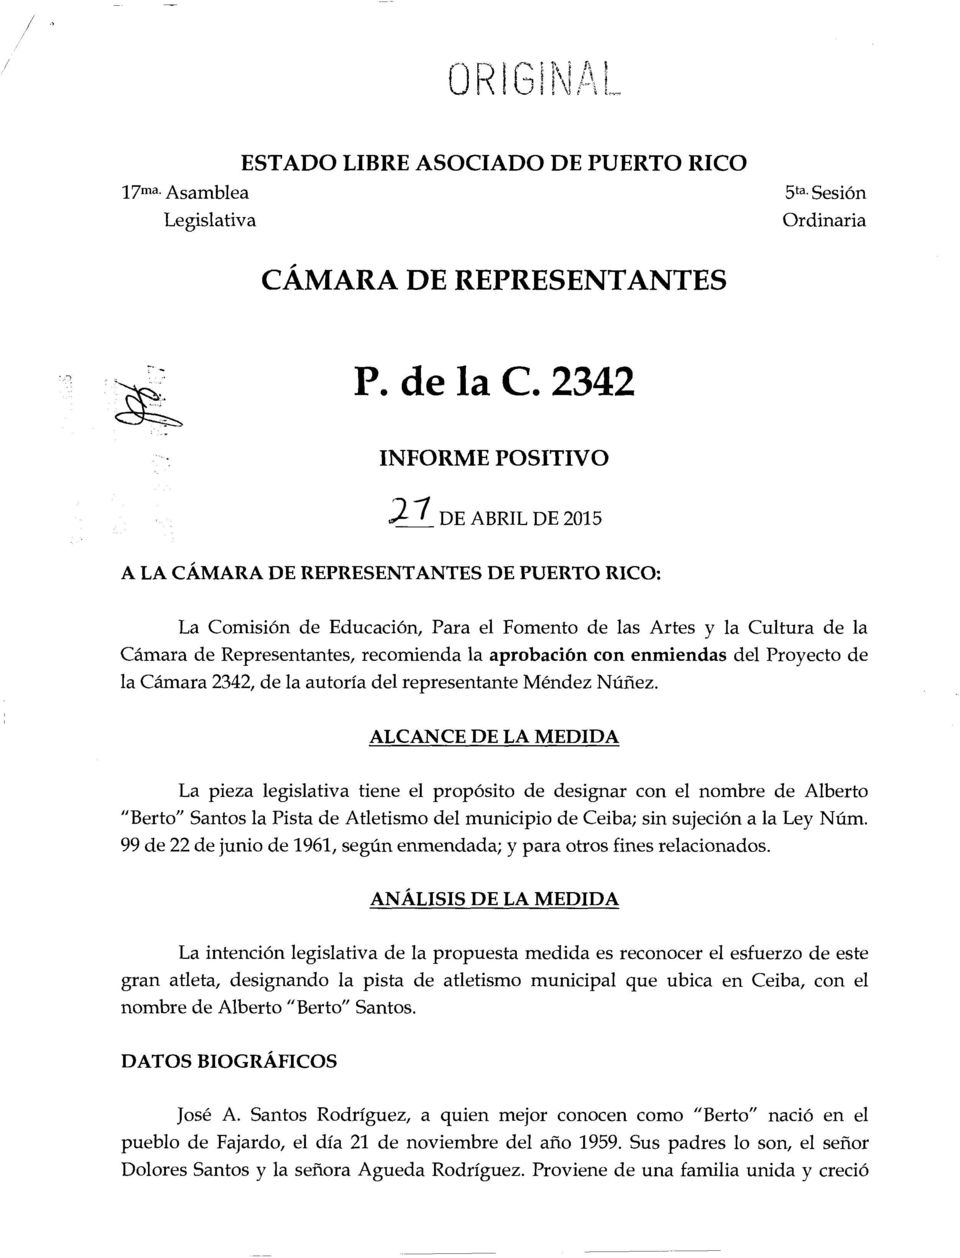 recomienda la aprobaci6n con enmiendas del Proyecto de la Camara 2342, de la autorfa del representante Mendez Nunez.